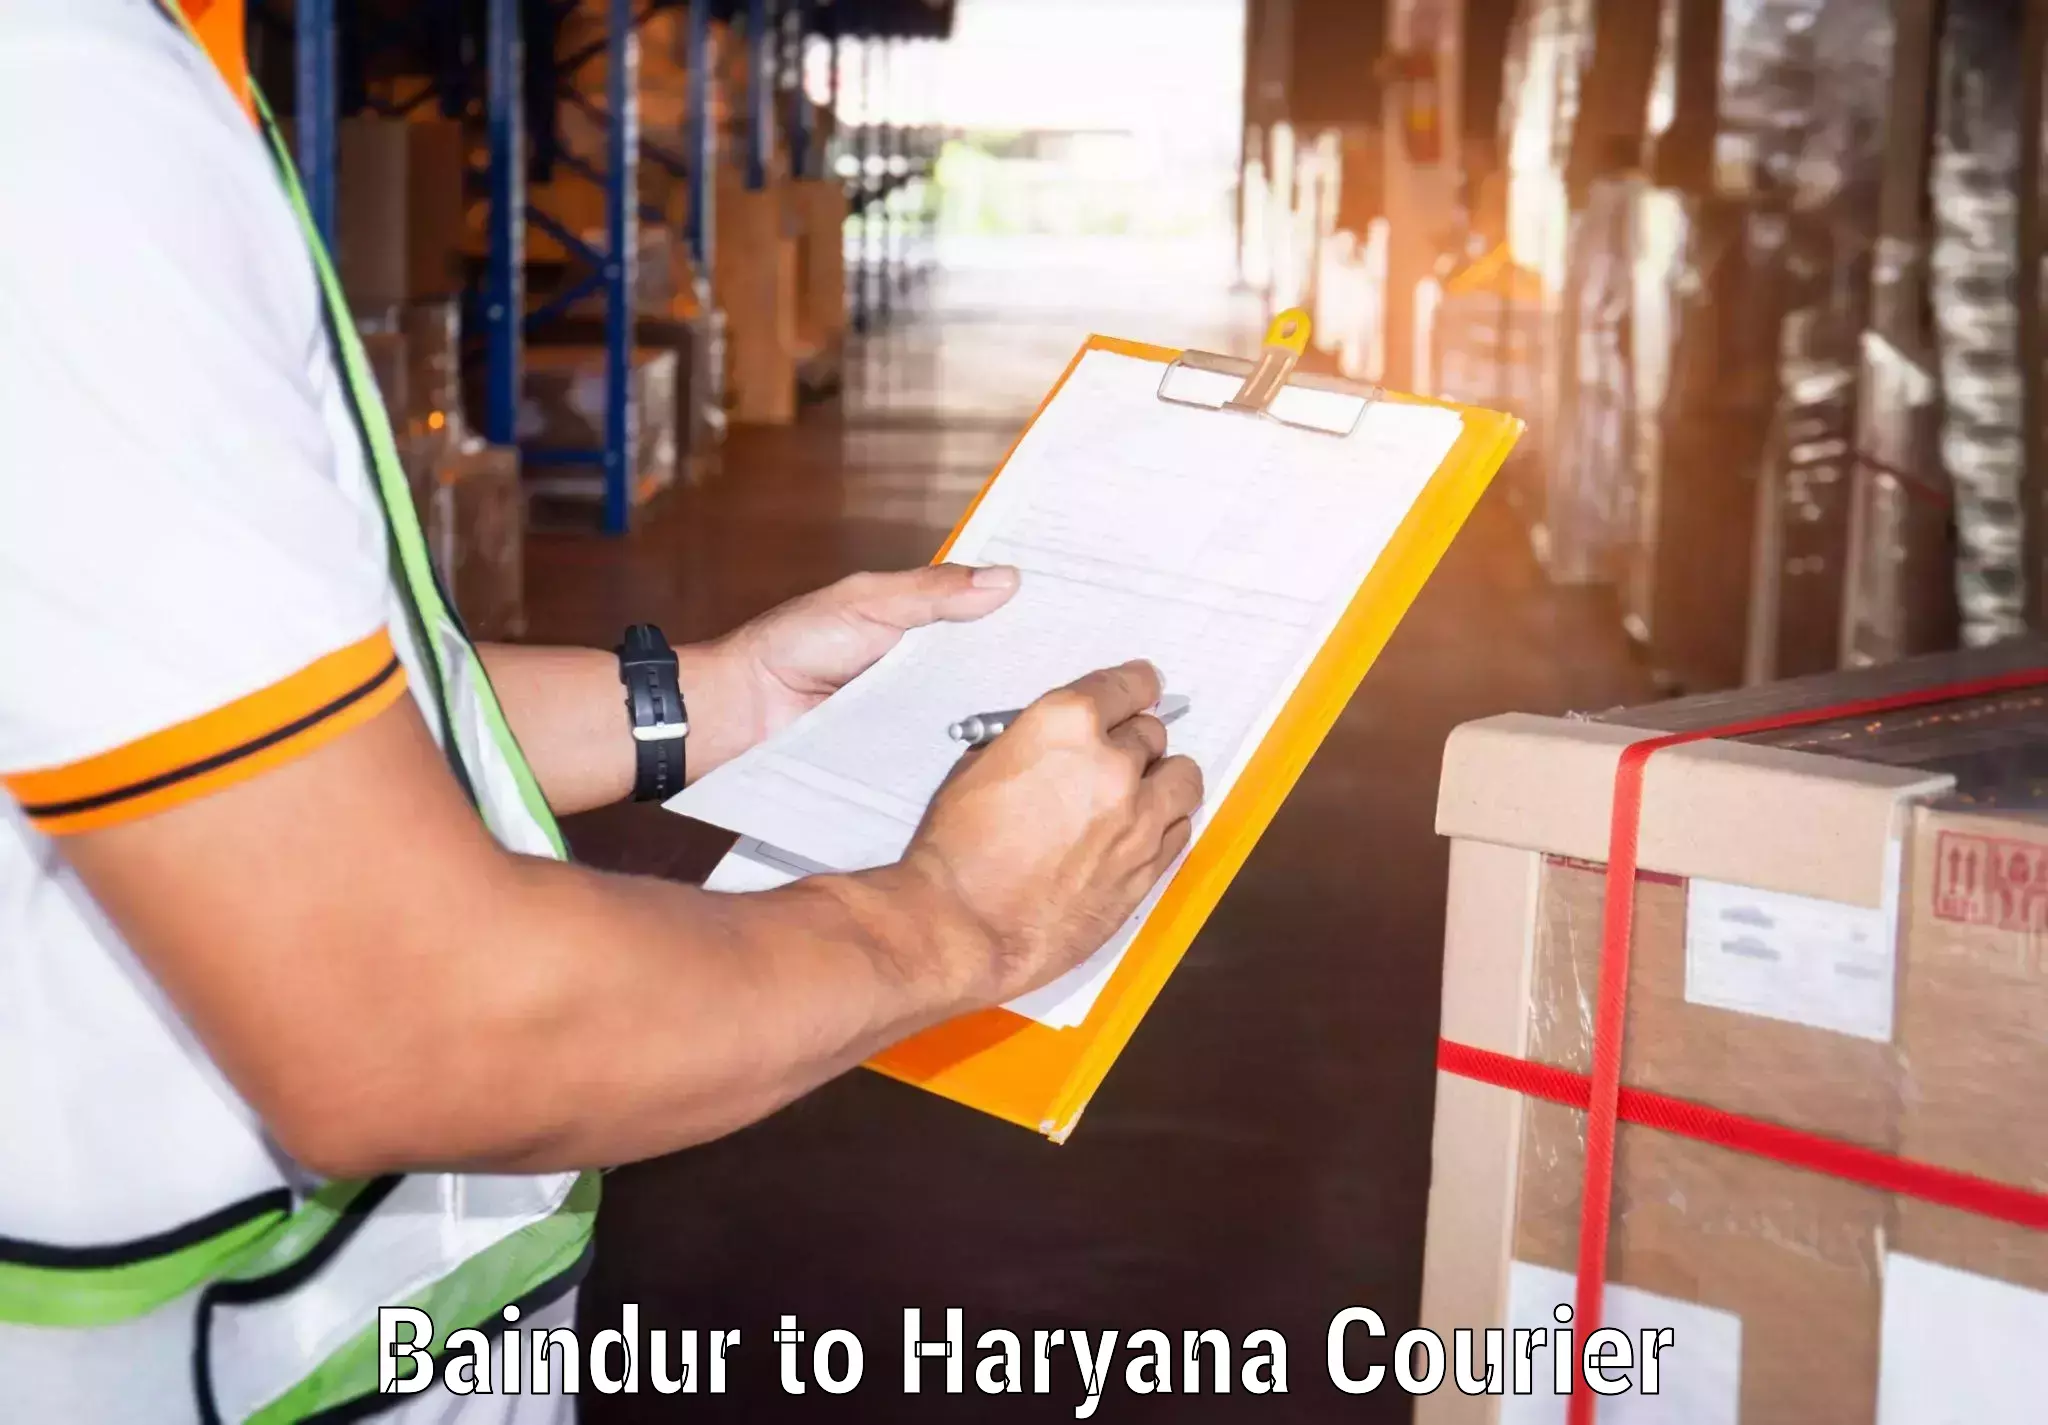 Next-generation courier services Baindur to Loharu